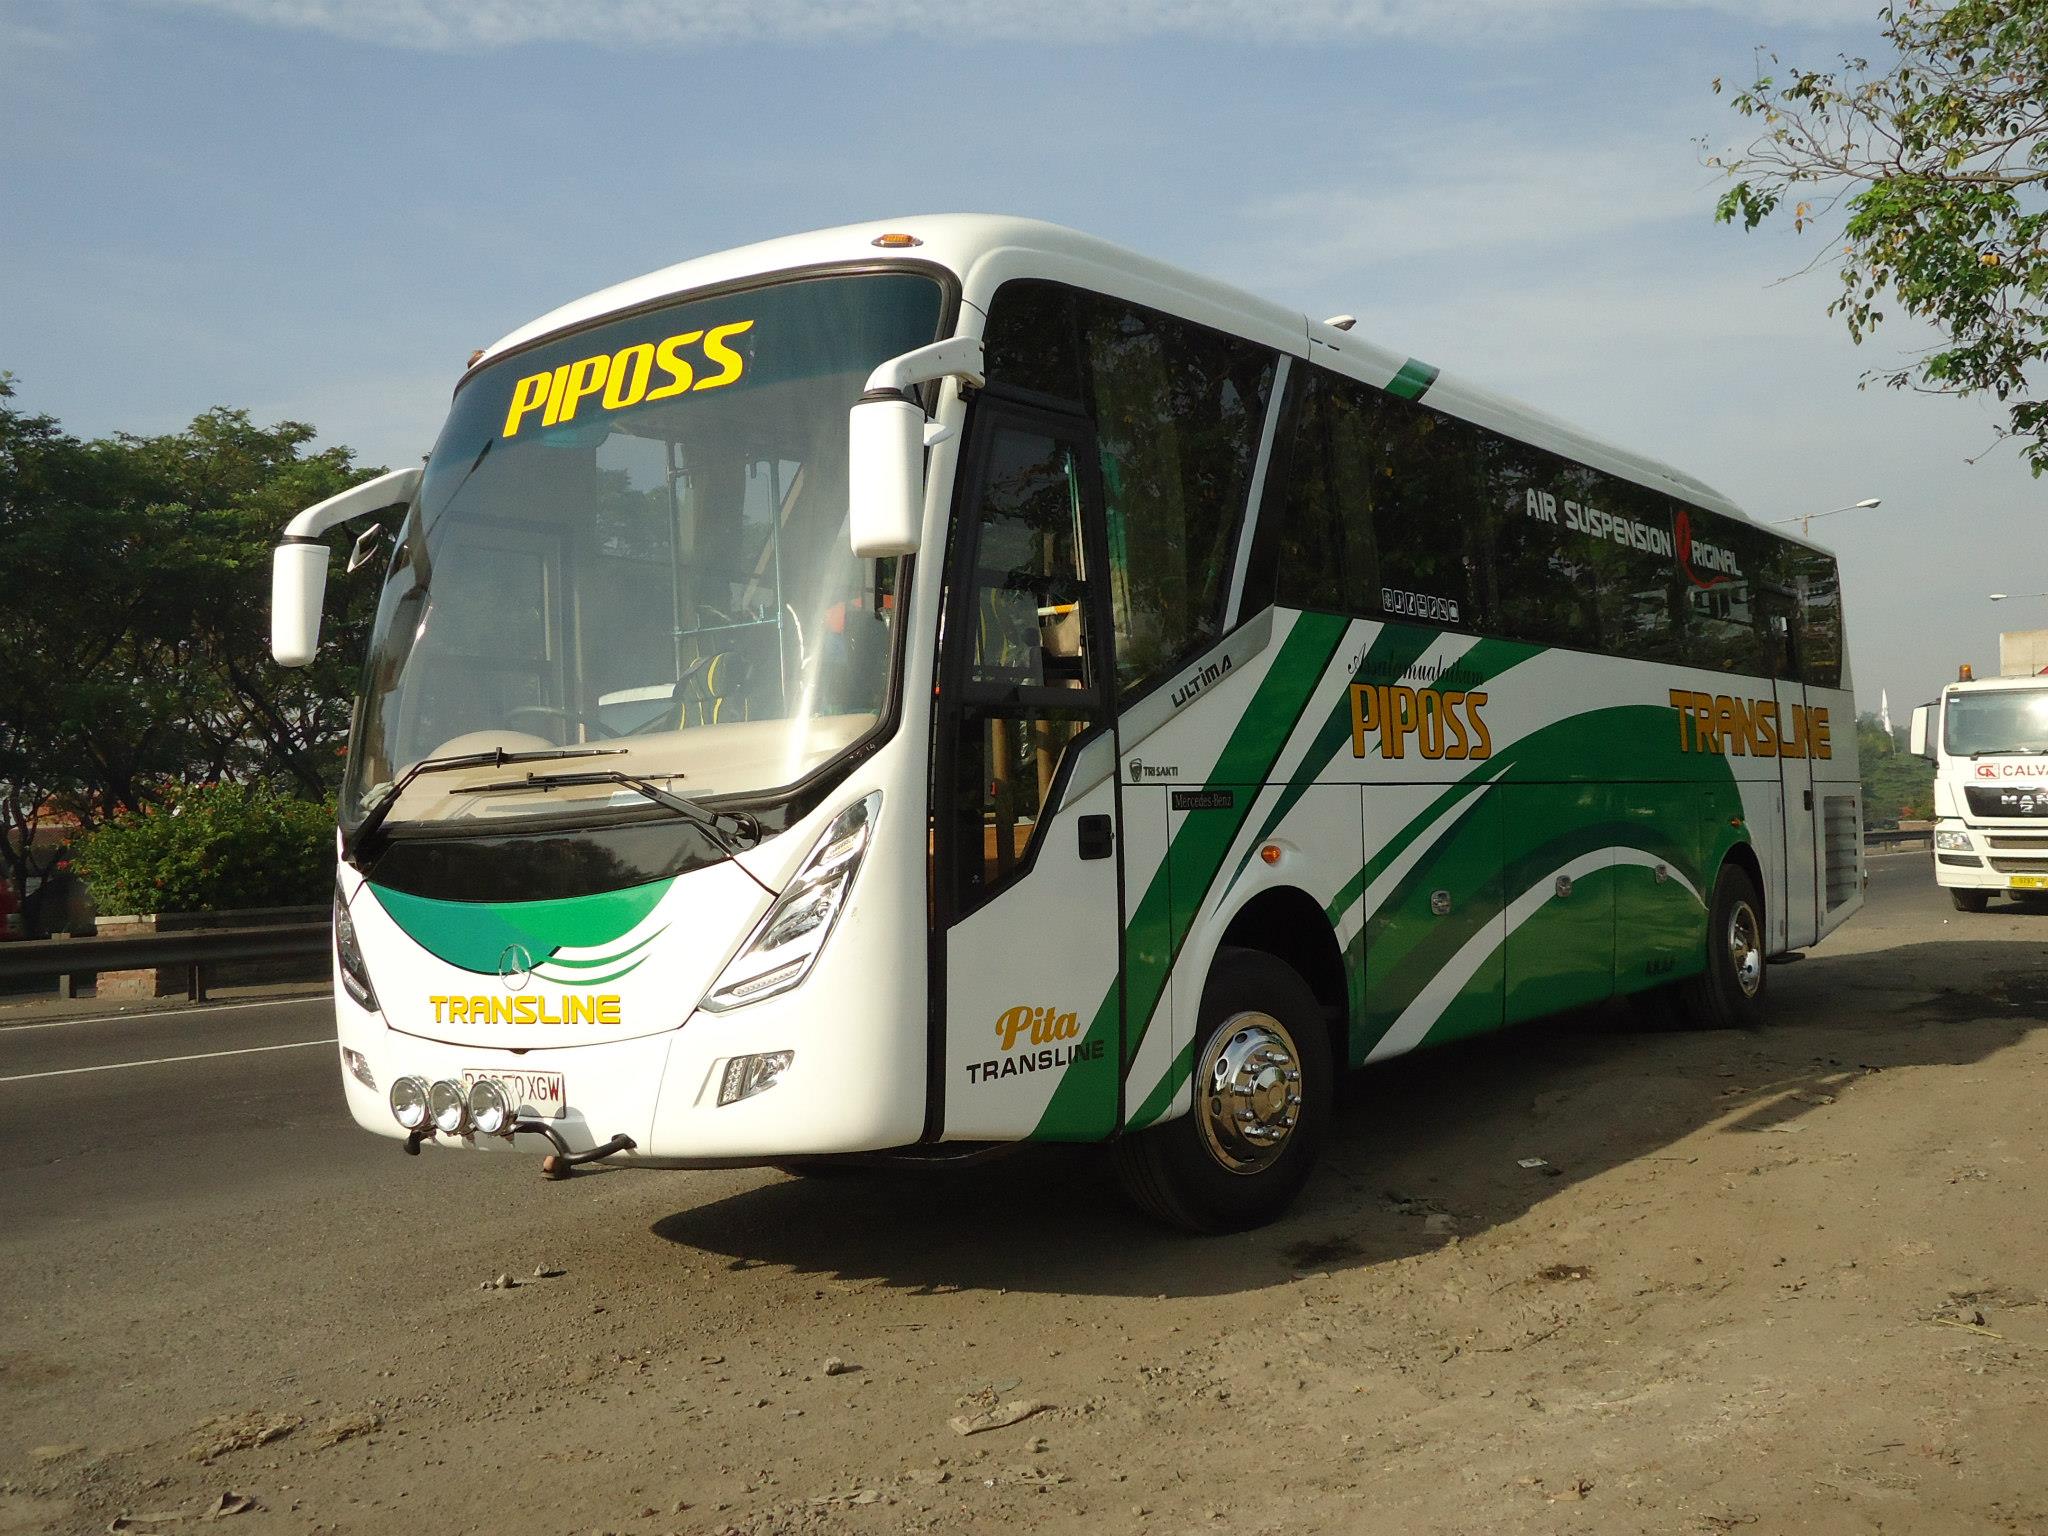 Memperawani Bus PIPOSS Transline By ULTIMA Karoseri TRI SAKTI